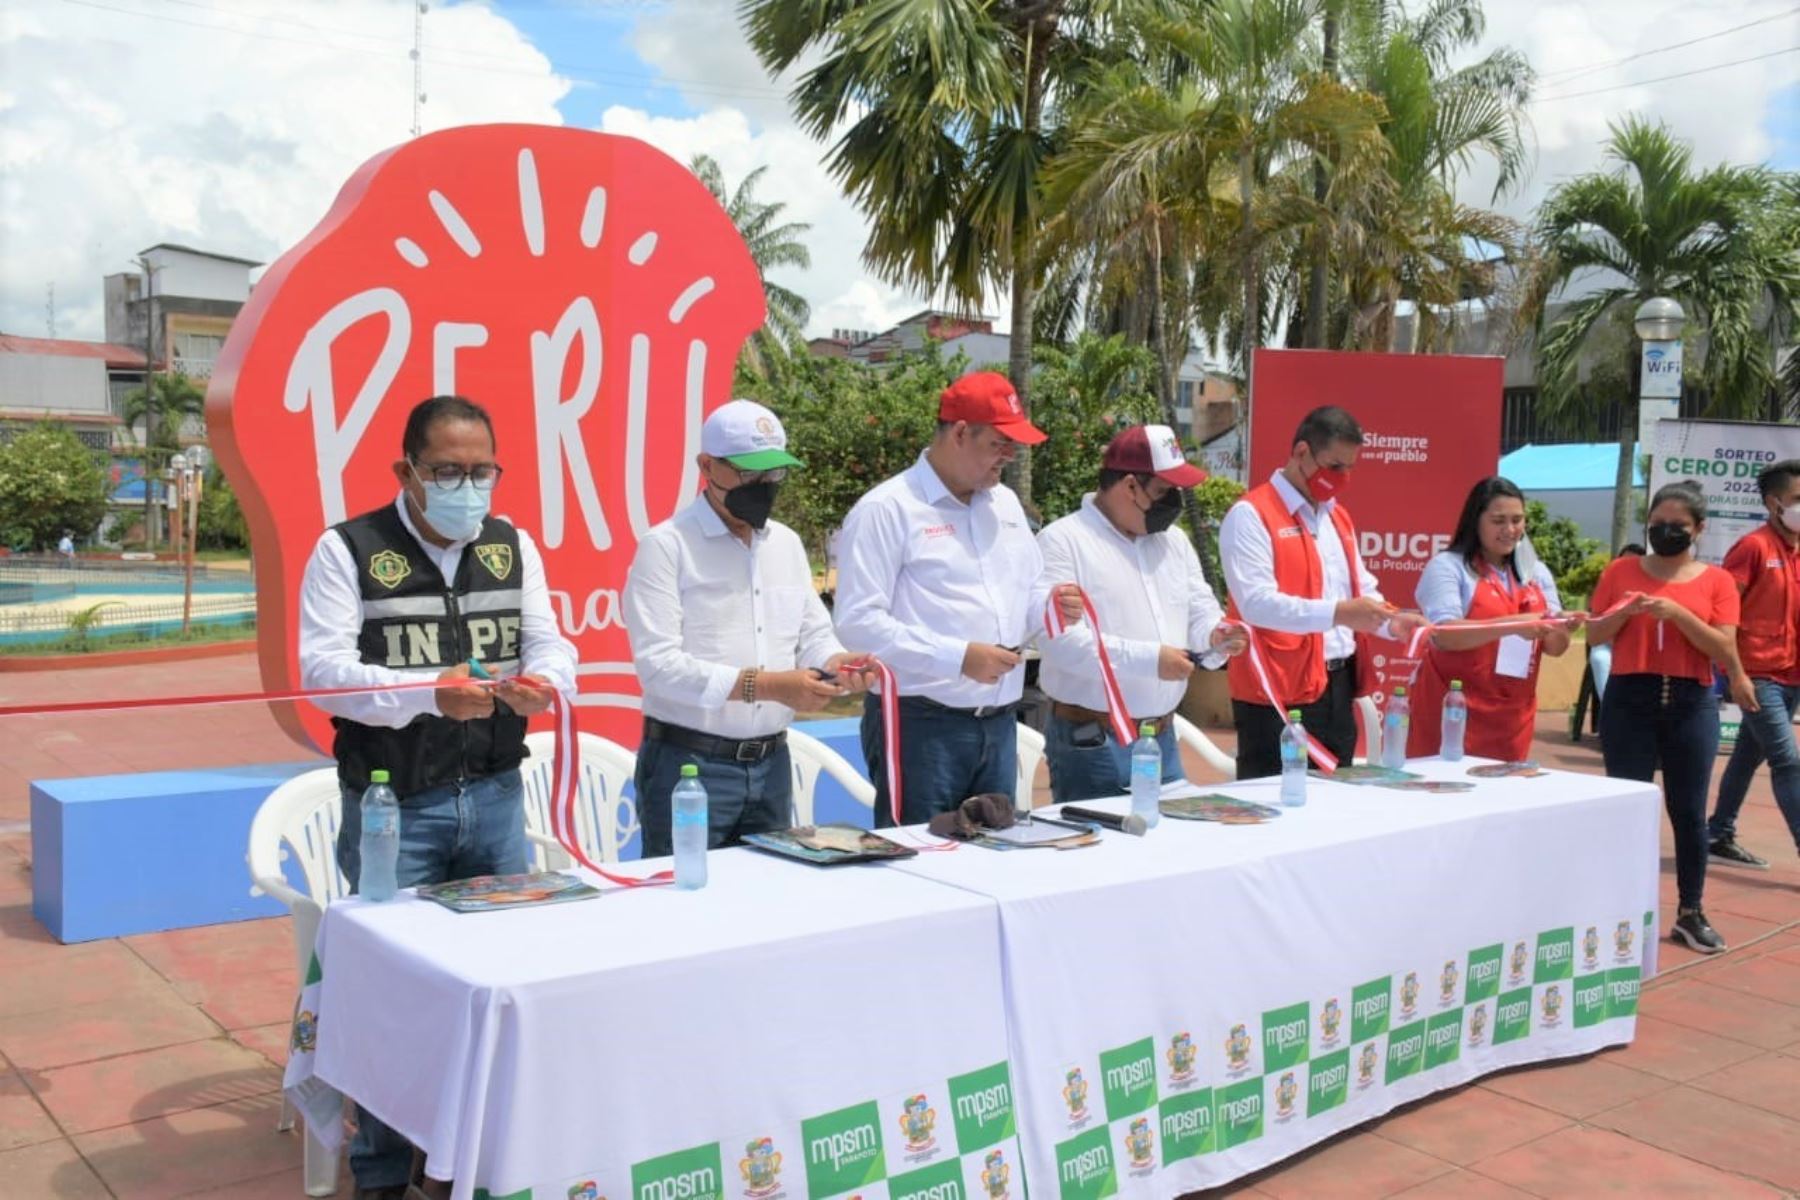 San Martín organiza feria Perú Imparable con participación de emprendedores de ocho regiones del país. La feria espera generar ventas por más de S/ 120,000.